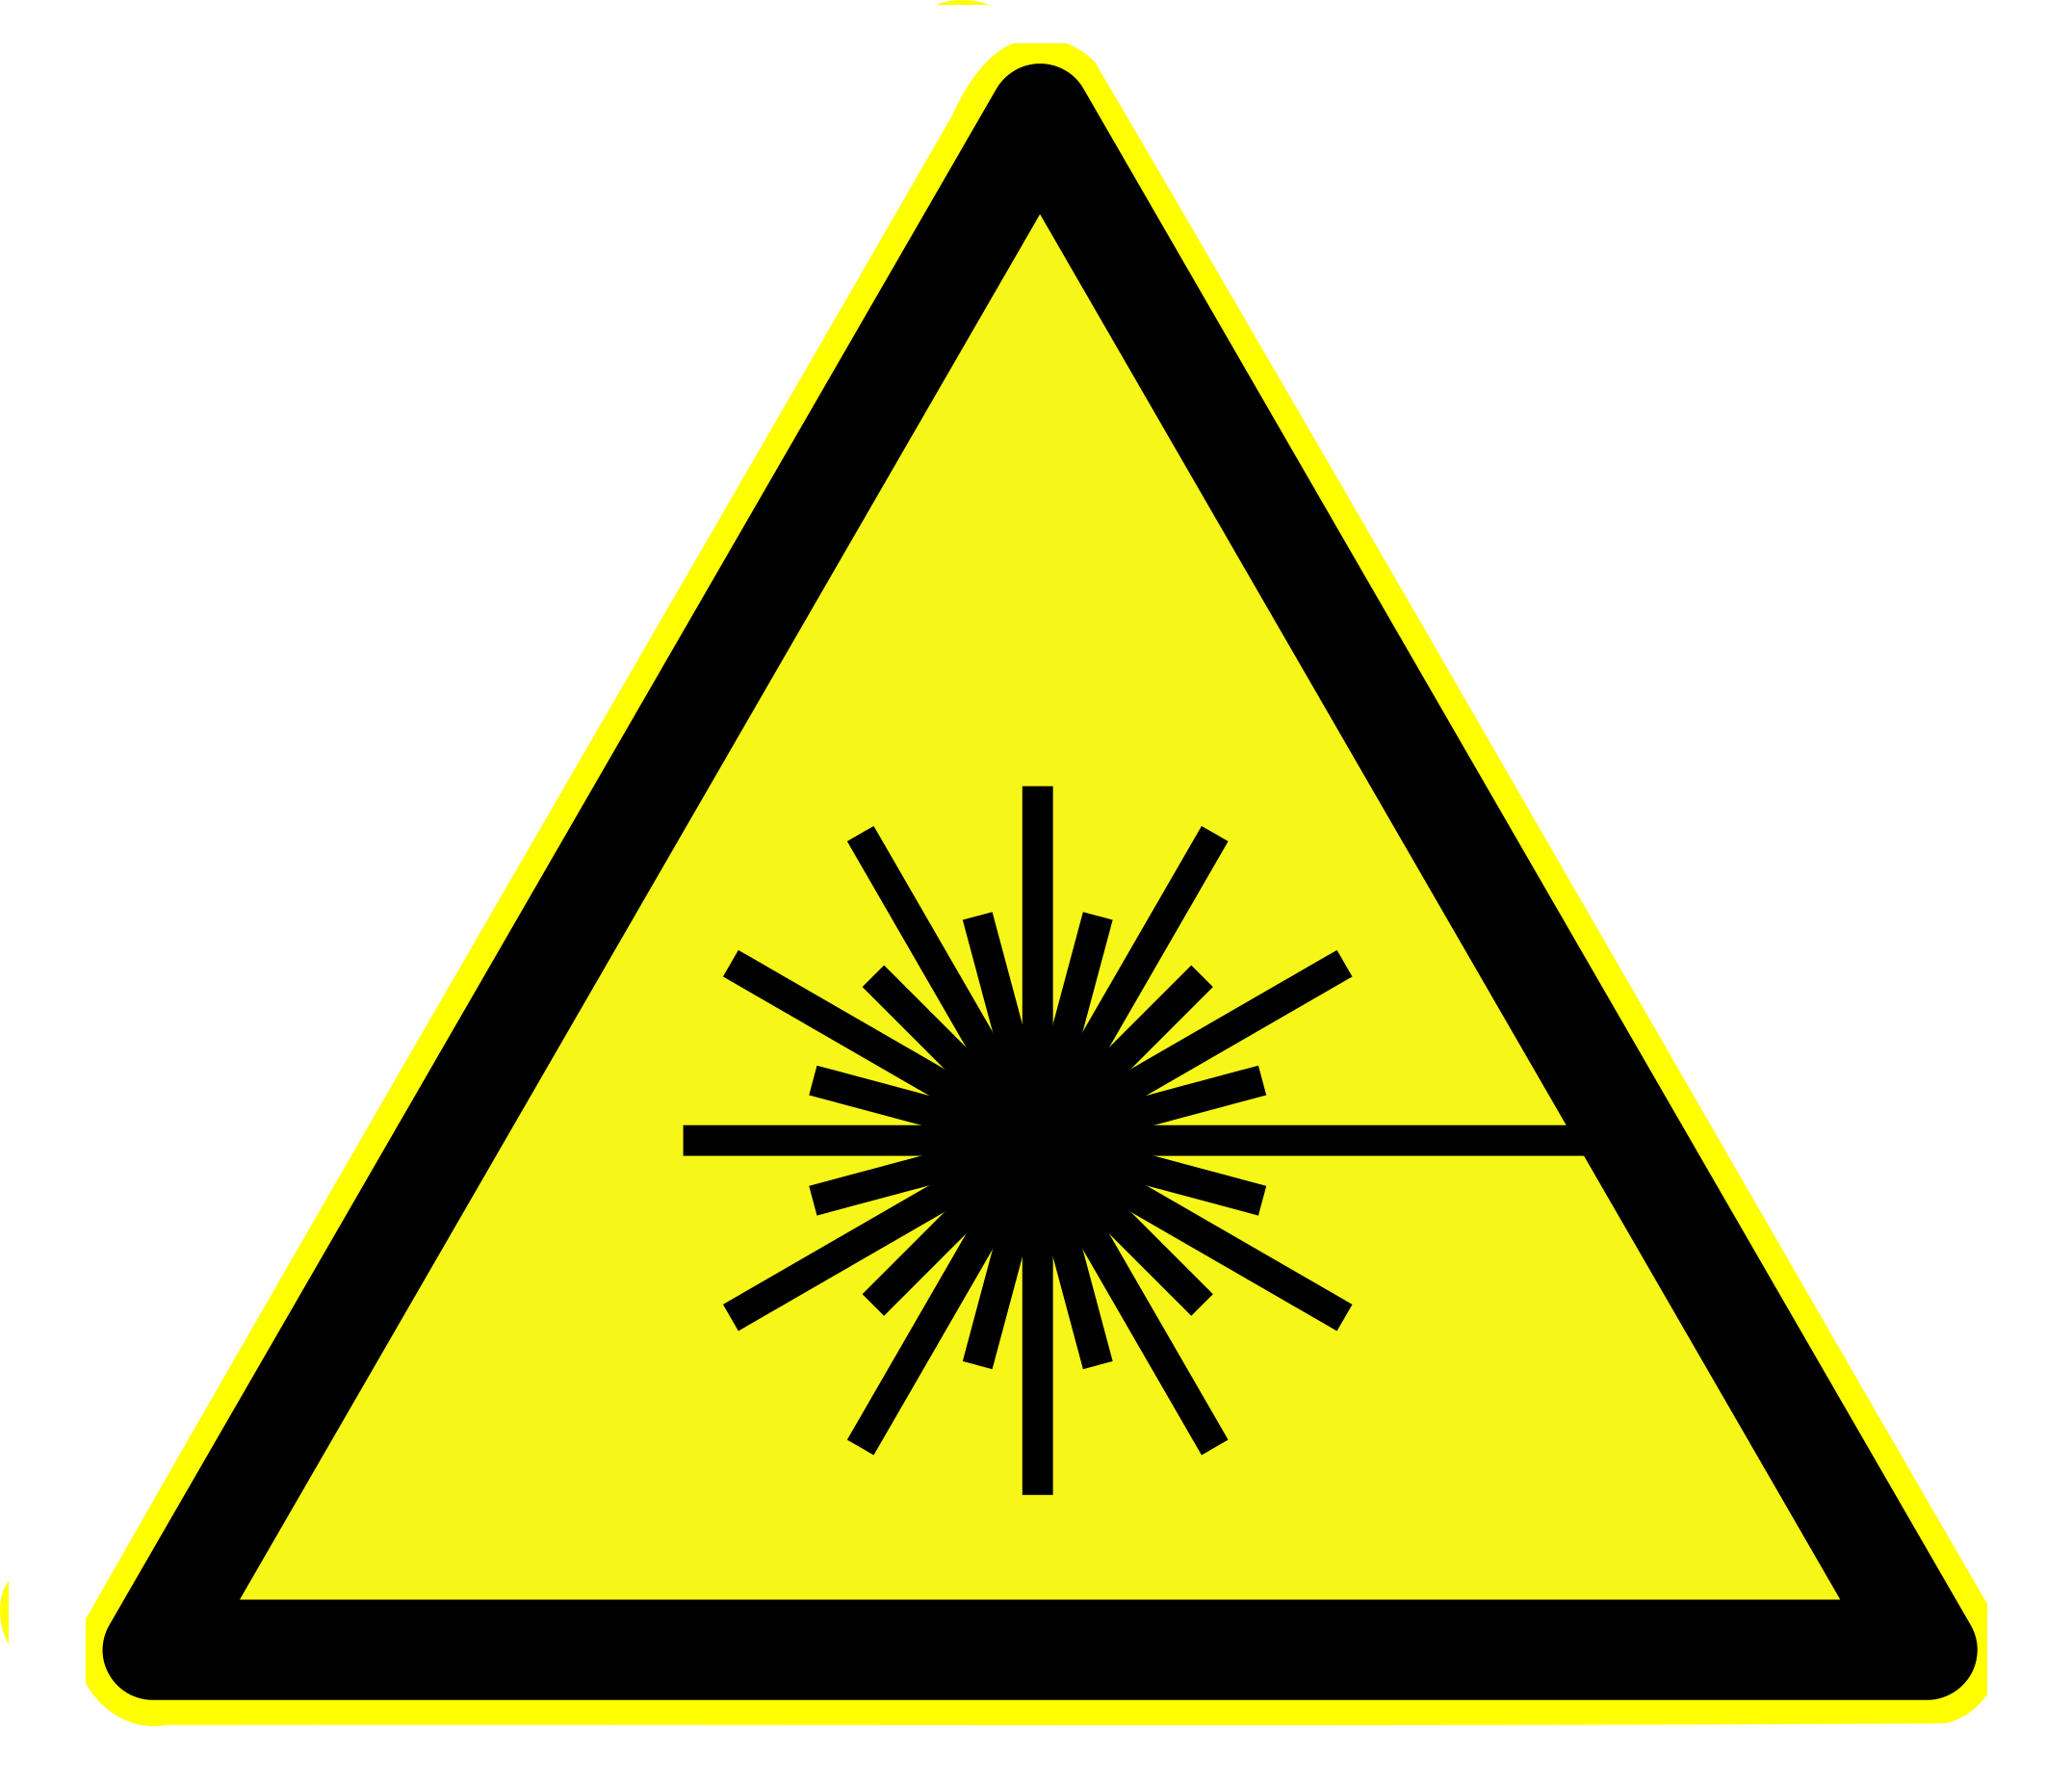 Piktogramm zur Warnung vor Laseranwendungen und Laserstrahlung